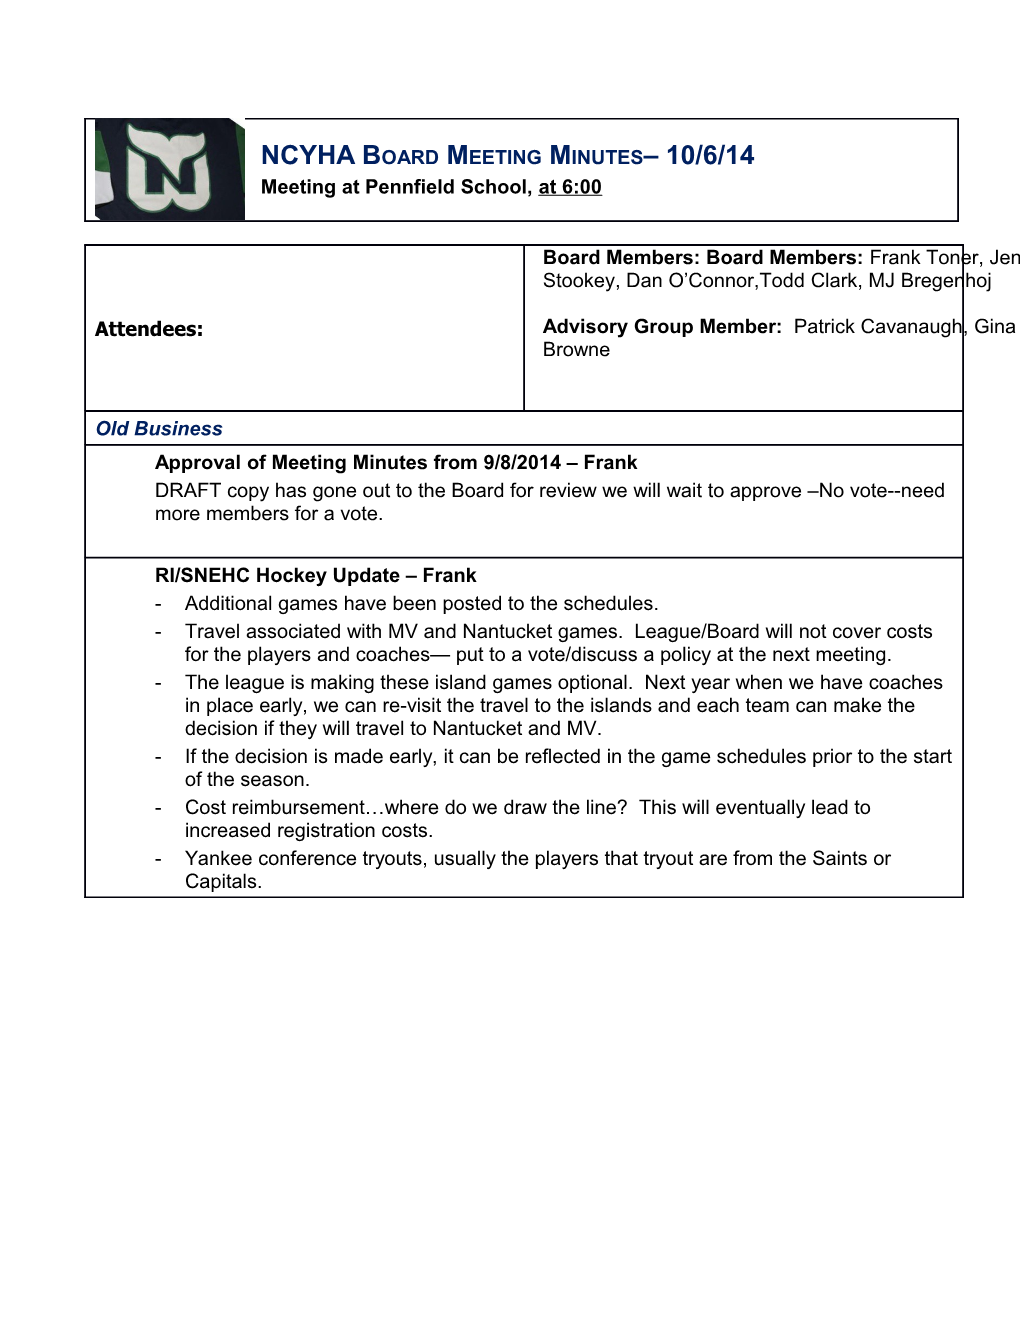 NCYHA Boardmeeting Minutes 10/6/14